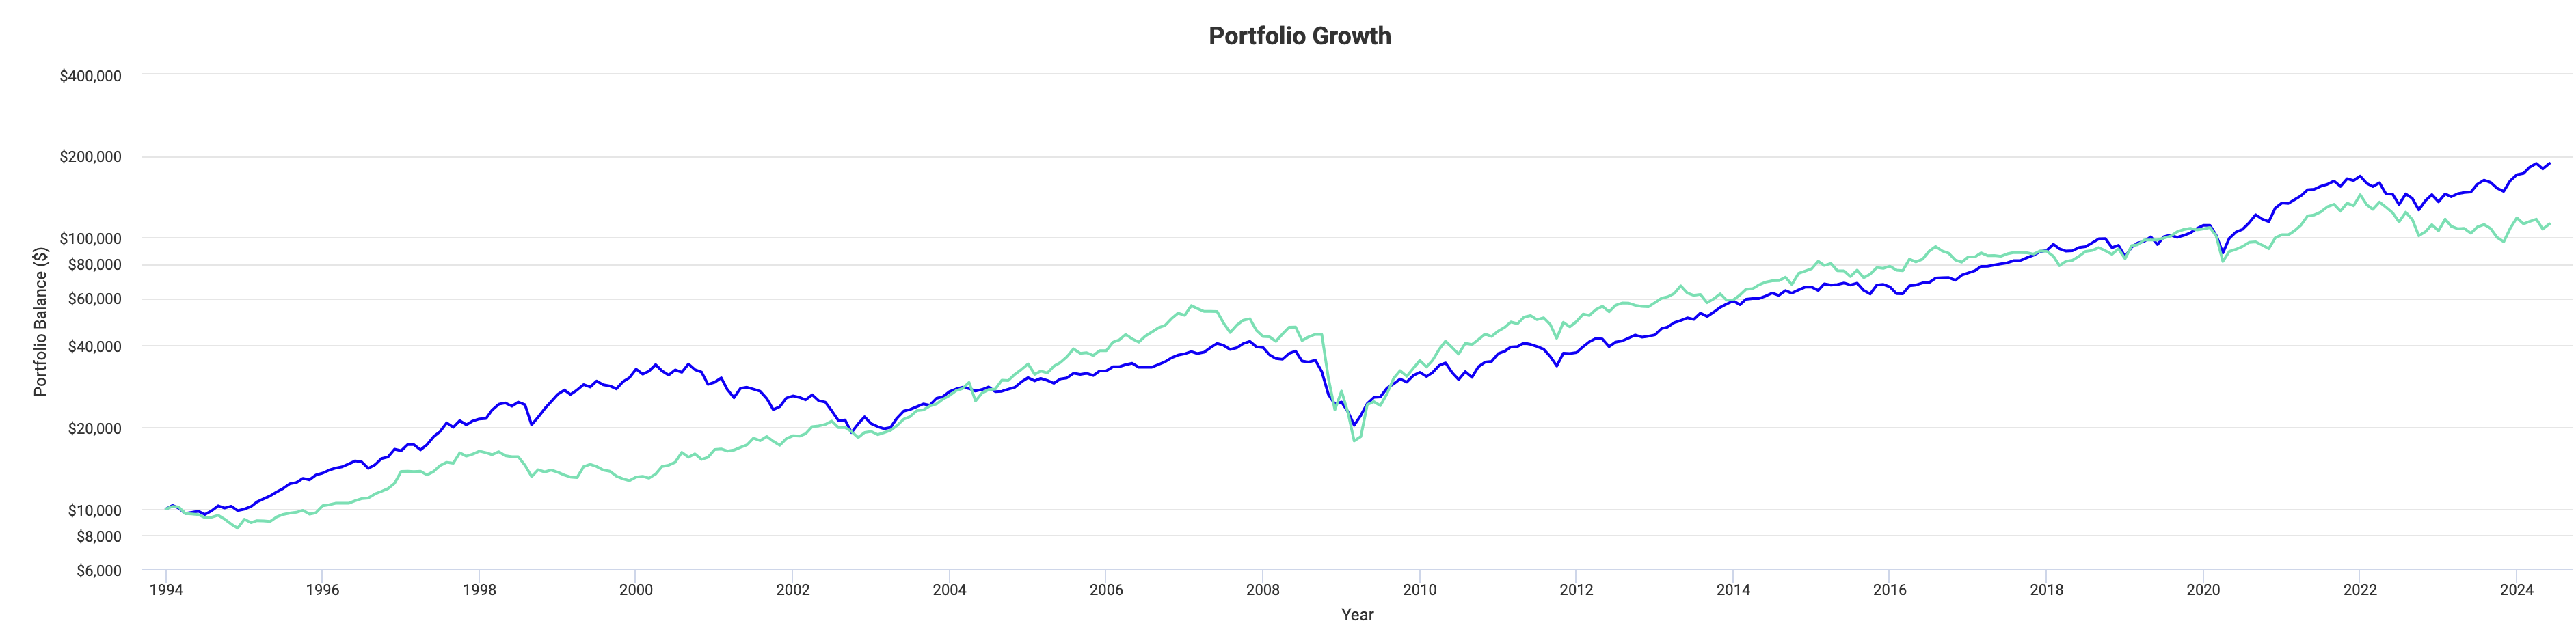 株式とリート(不動産投資信託)のリターンの比較